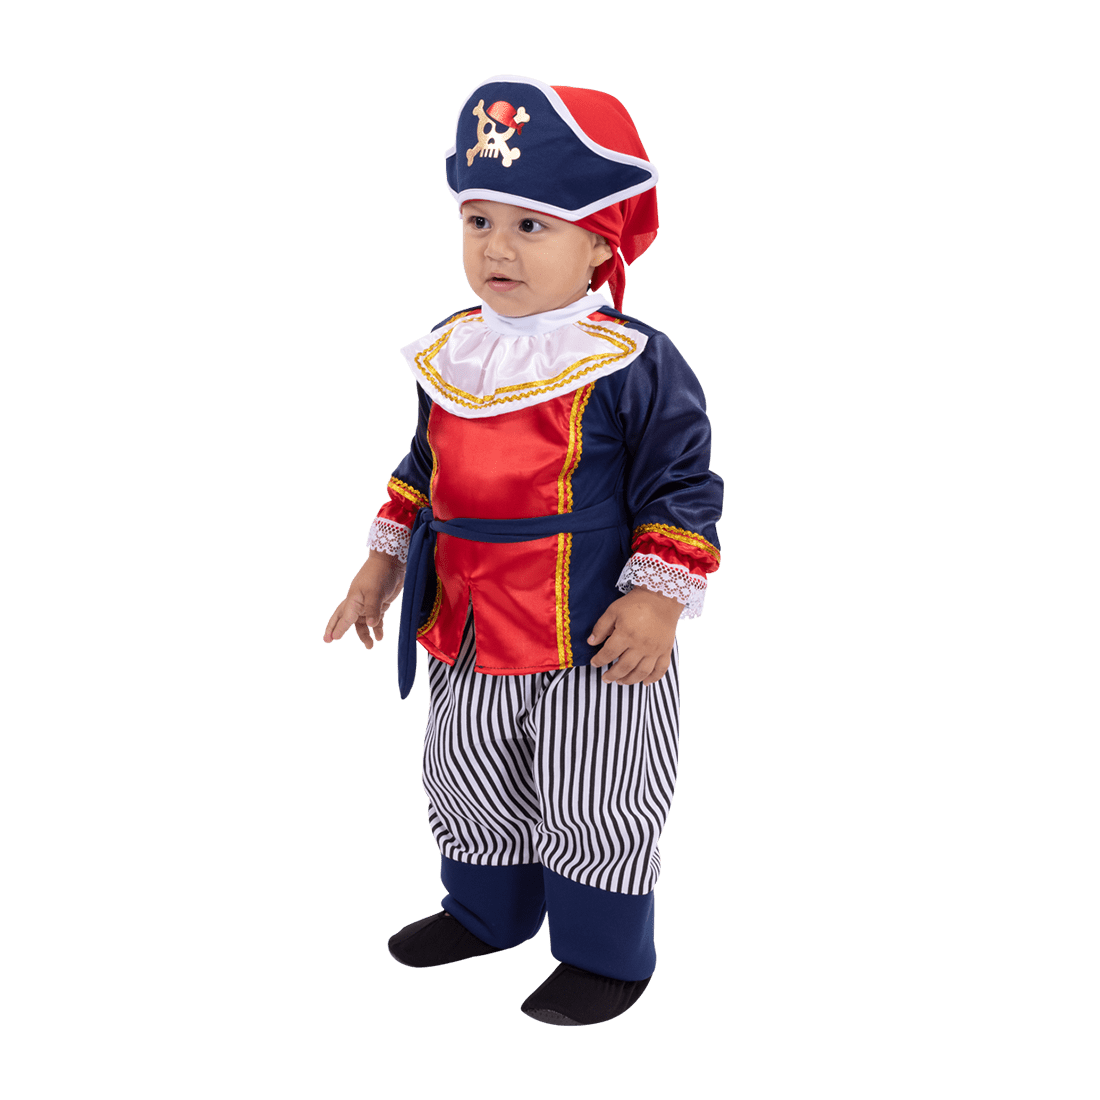 Disfraz pirata adventure niños de 3 a 8 años 